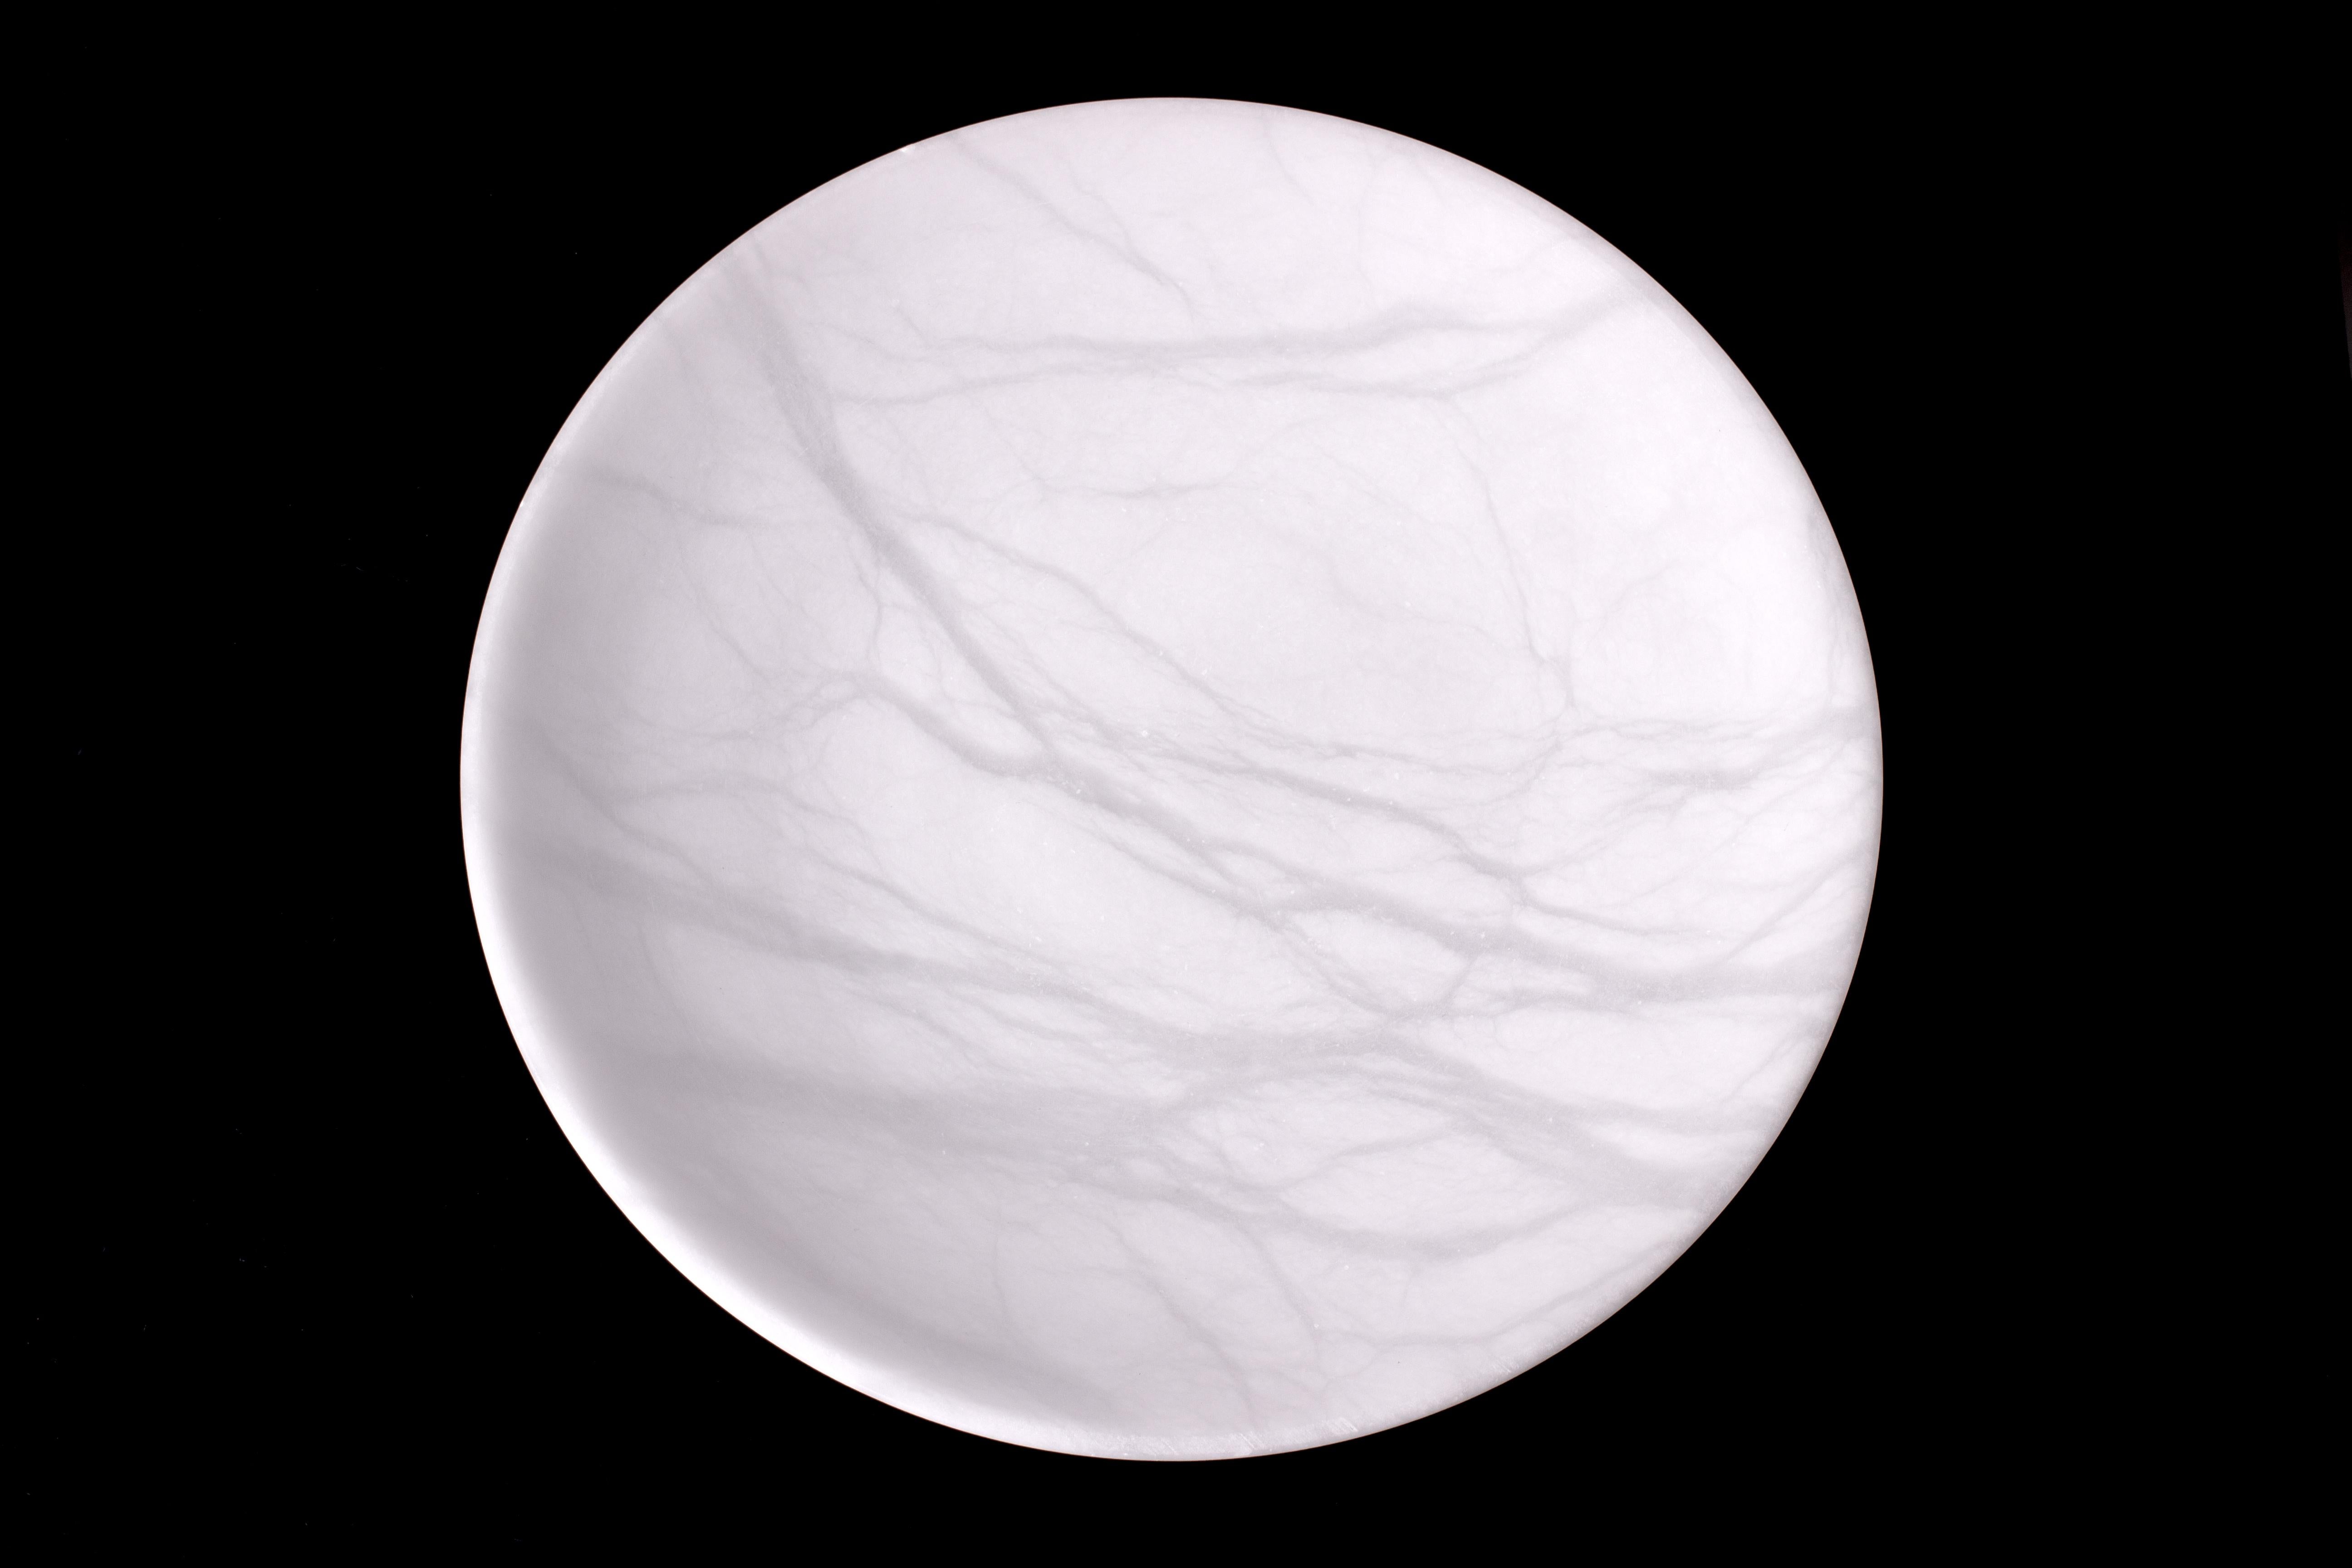 Coupe sculptée minimaliste en marbre de Carrare adouci de qualité statuaire fine. Pierre blanche pure avec des veines blanches de transparence variable. Forme élégante et incurvée, avec une épaisseur de pierre constante sur toute la surface du plat.